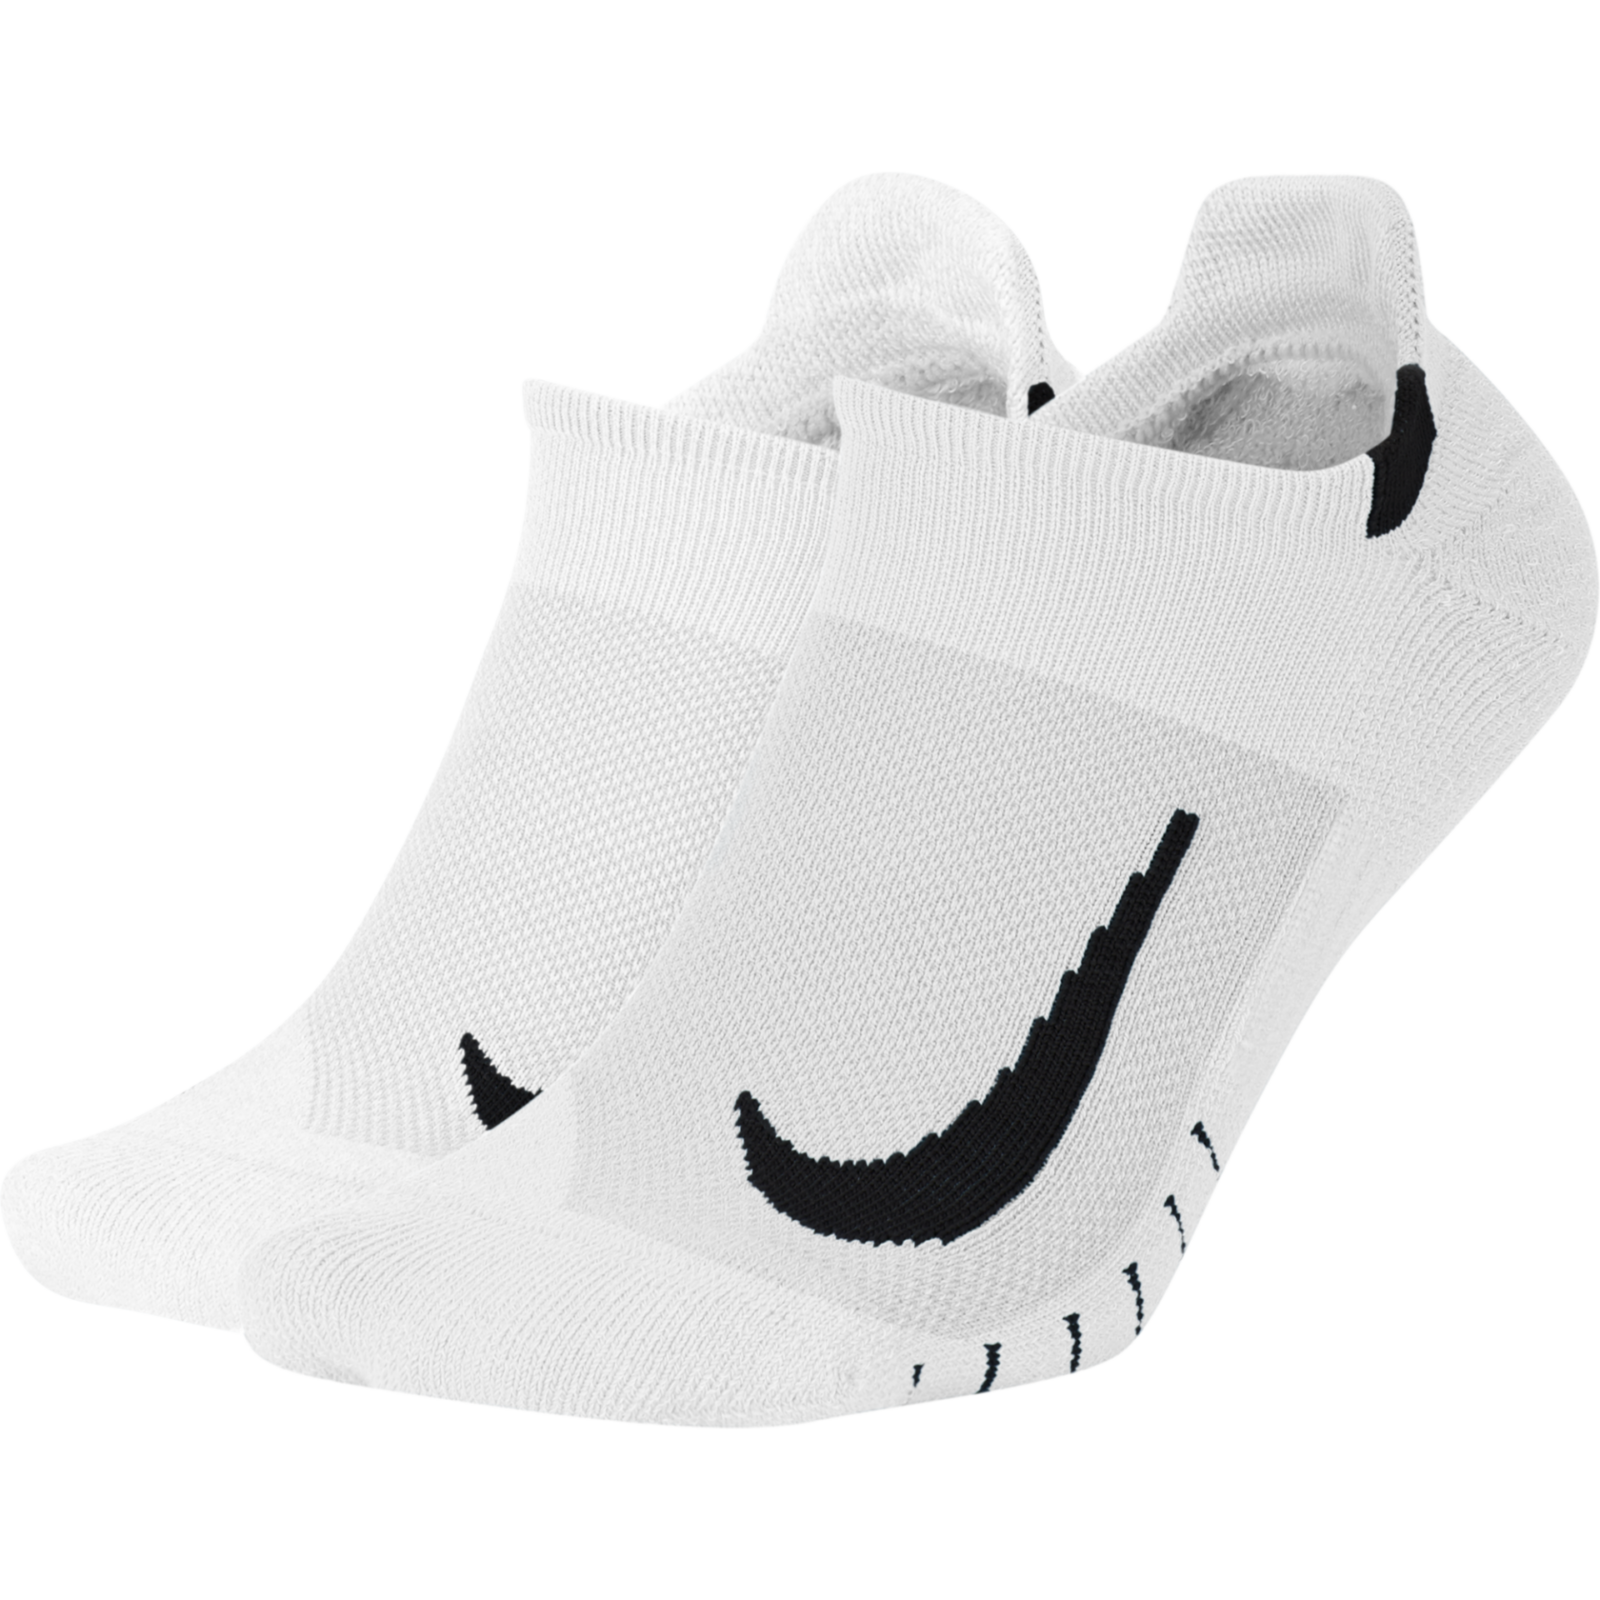 Nike Man's Socks Multiplier